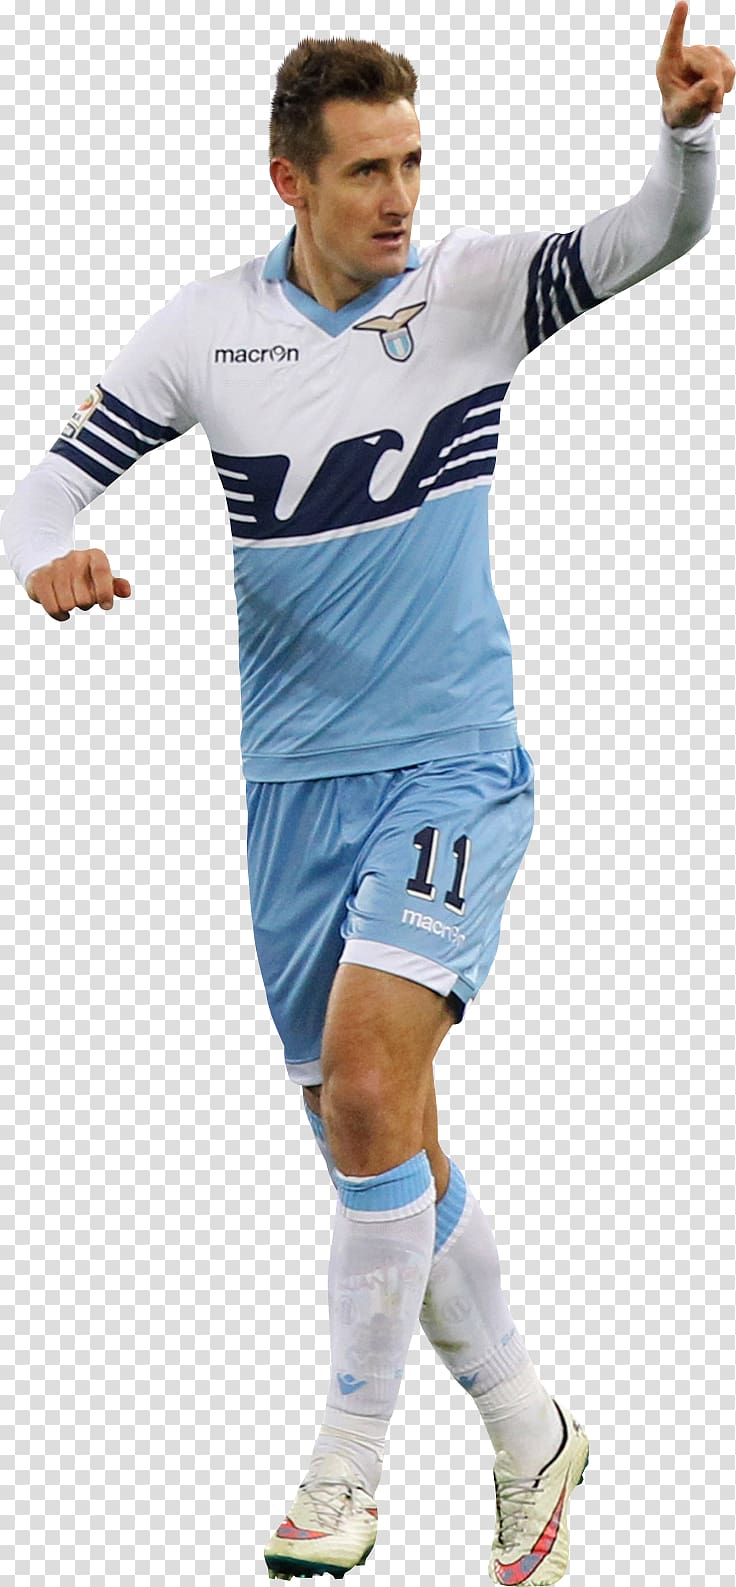 Joaquín Jersey Sport Peloc Football player, Miroslav Klose transparent background PNG clipart